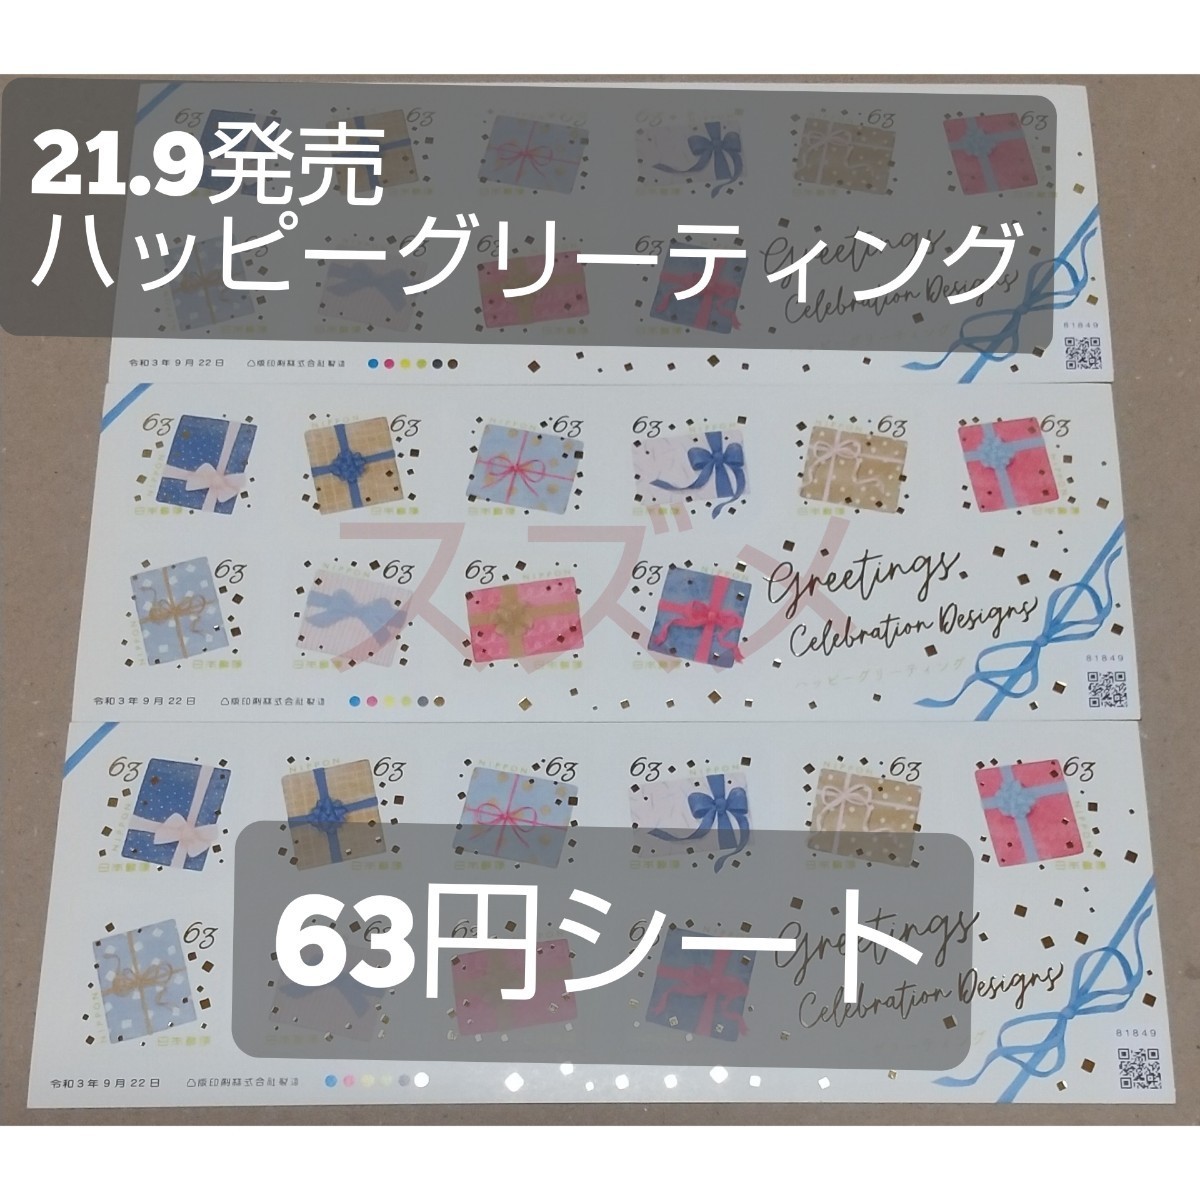 21.9発売 ハッピーグリーティング 63円 シール切手 3シート 1890円分  シール式切手 記念切手